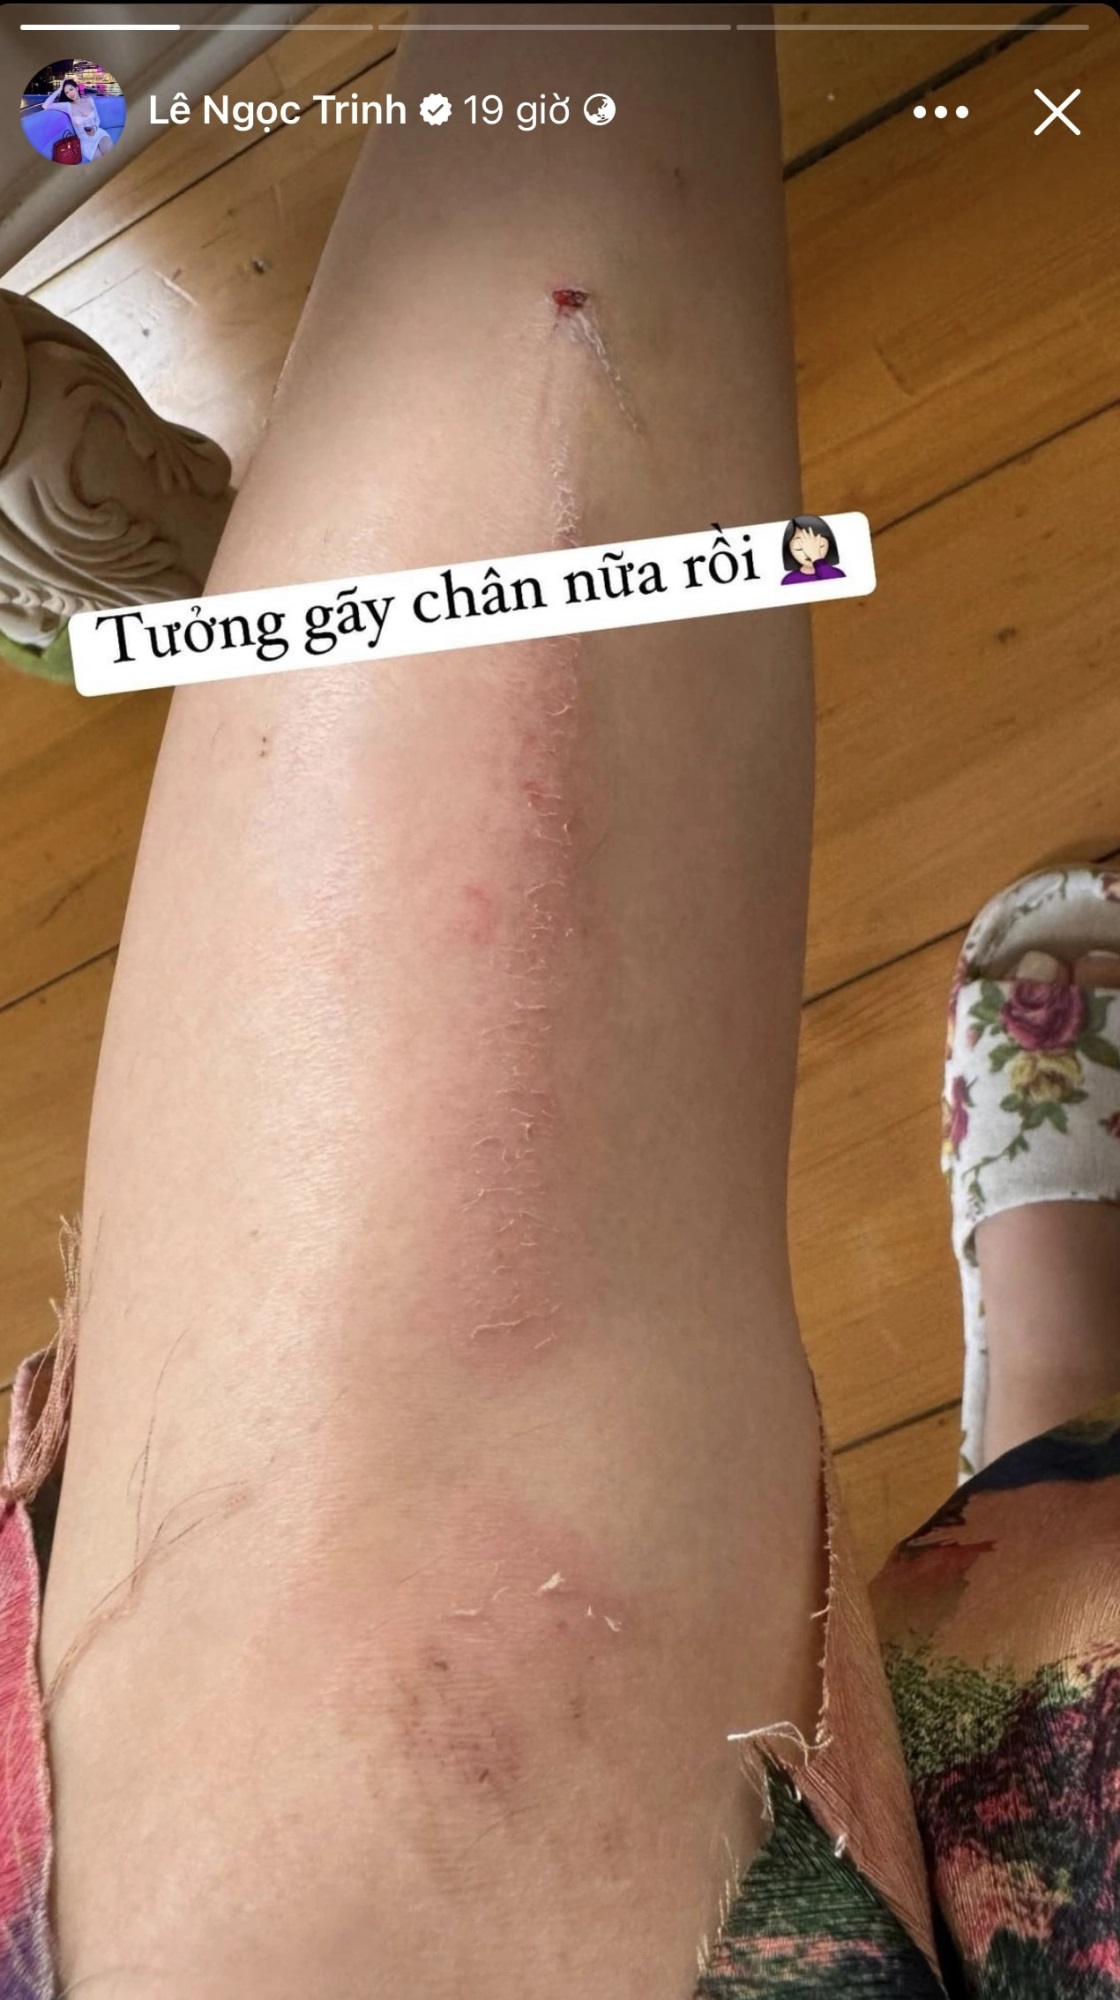 'Bản sao' Ngọc Trinh gặp tai nạn suýt gãy chân, được bạn trai mới làm một việc khiến netizen ngưỡng mộ - Ảnh 2